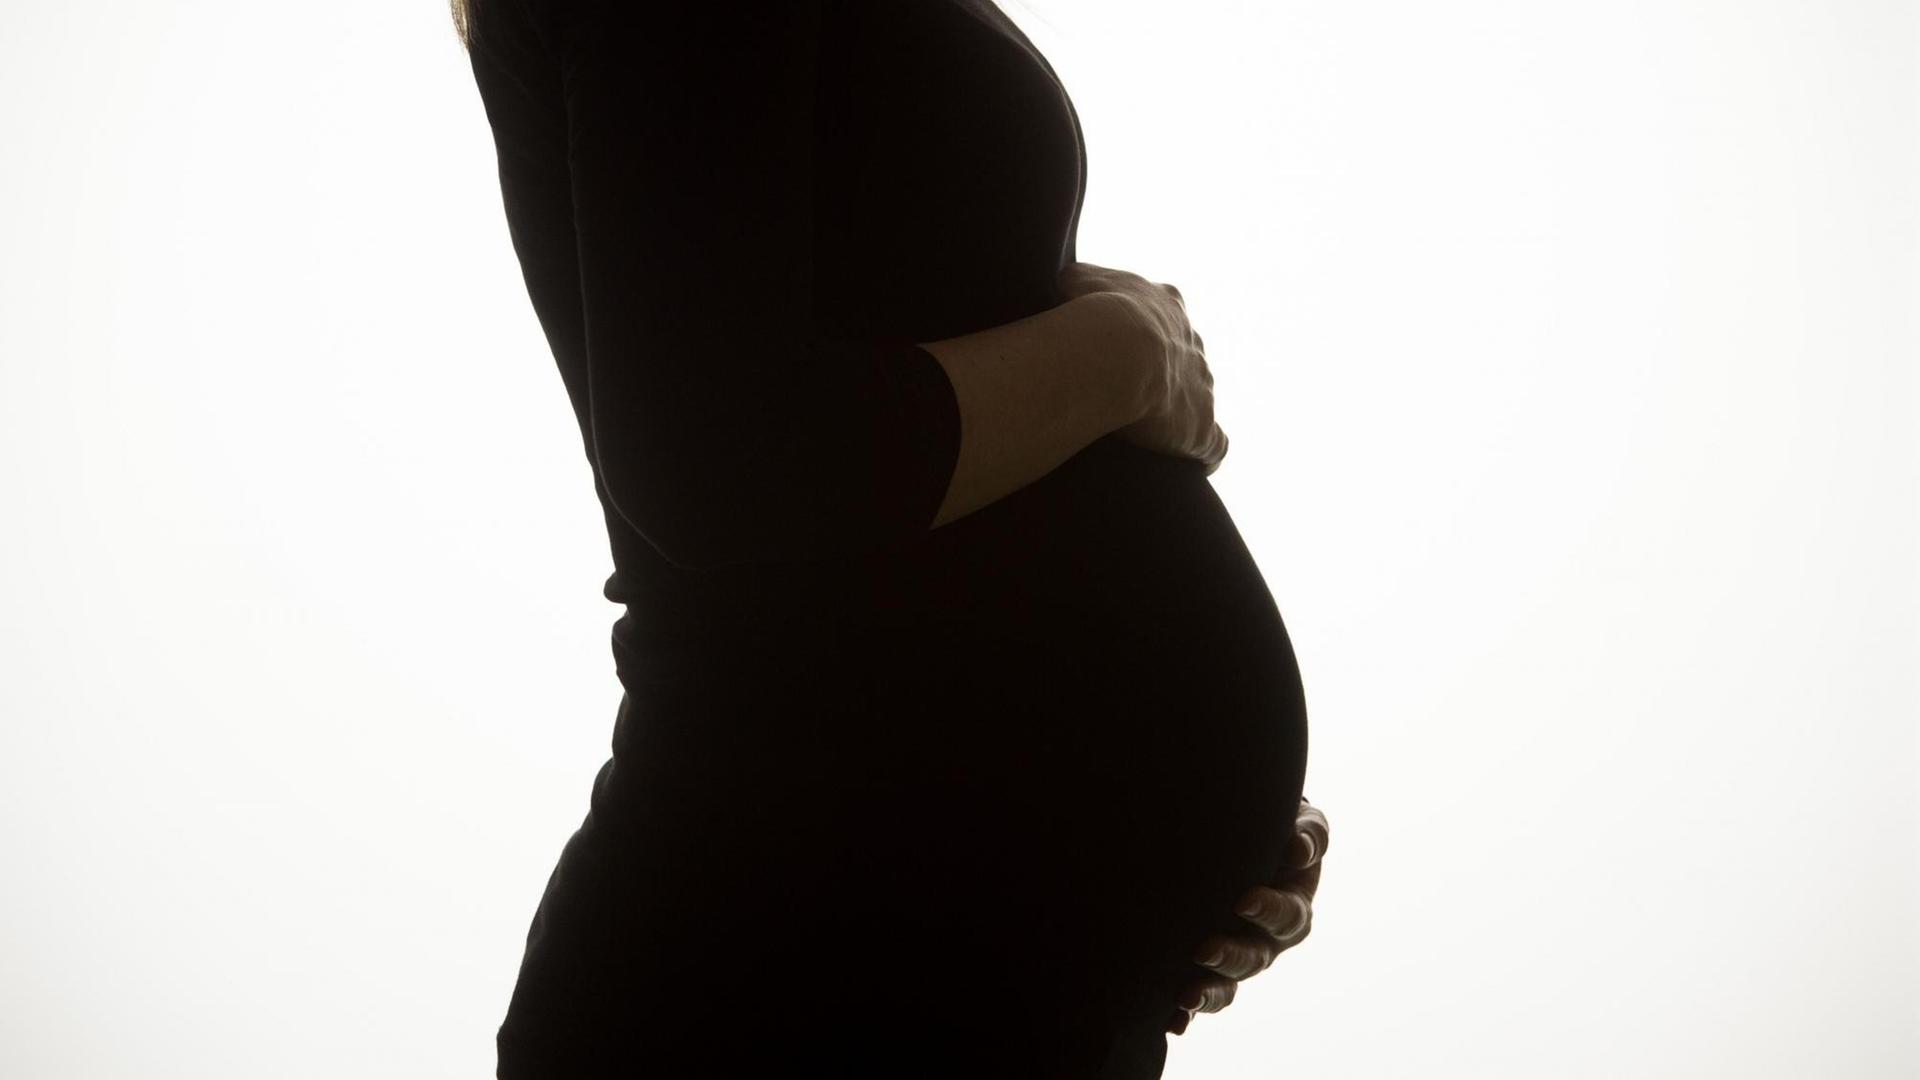 Der Kinderwunsch ist groß bei vielen italienischen Paaren, statt moderne Reproduktionsmedizin setzen einige auf Fruchtbarkeitsrituale